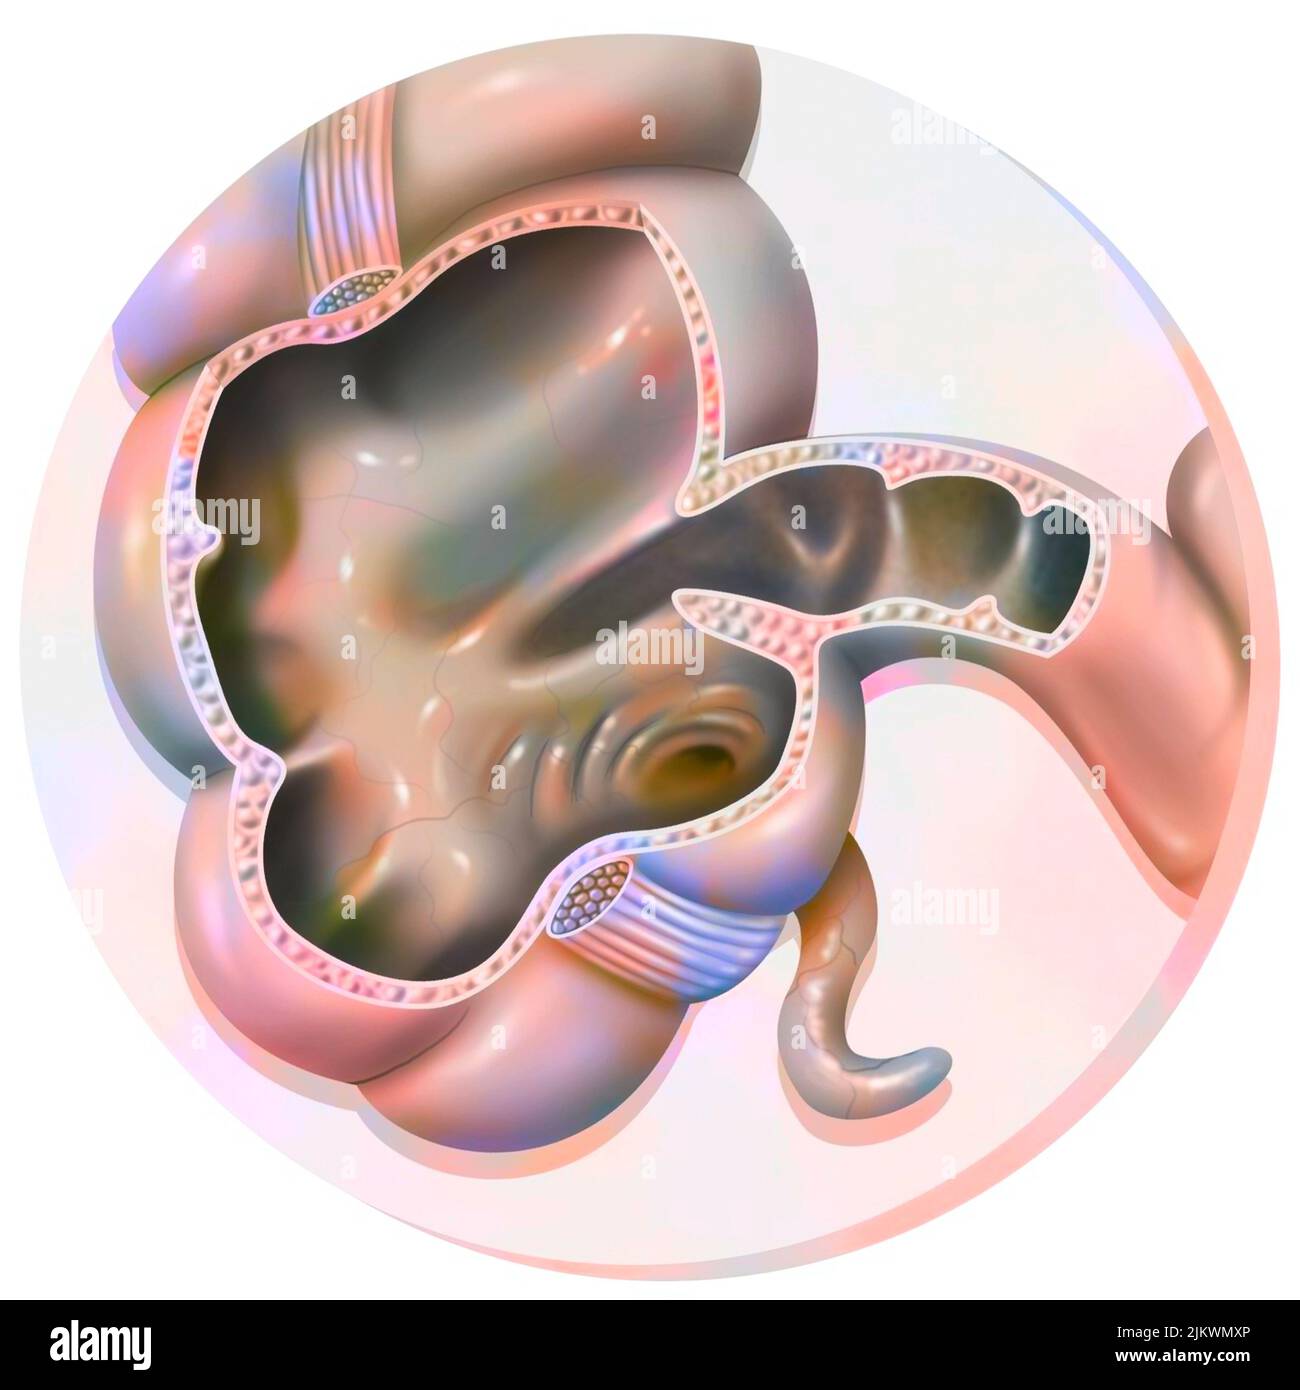 Anatomie du côlon : le caecum et l'appendice. Banque D'Images